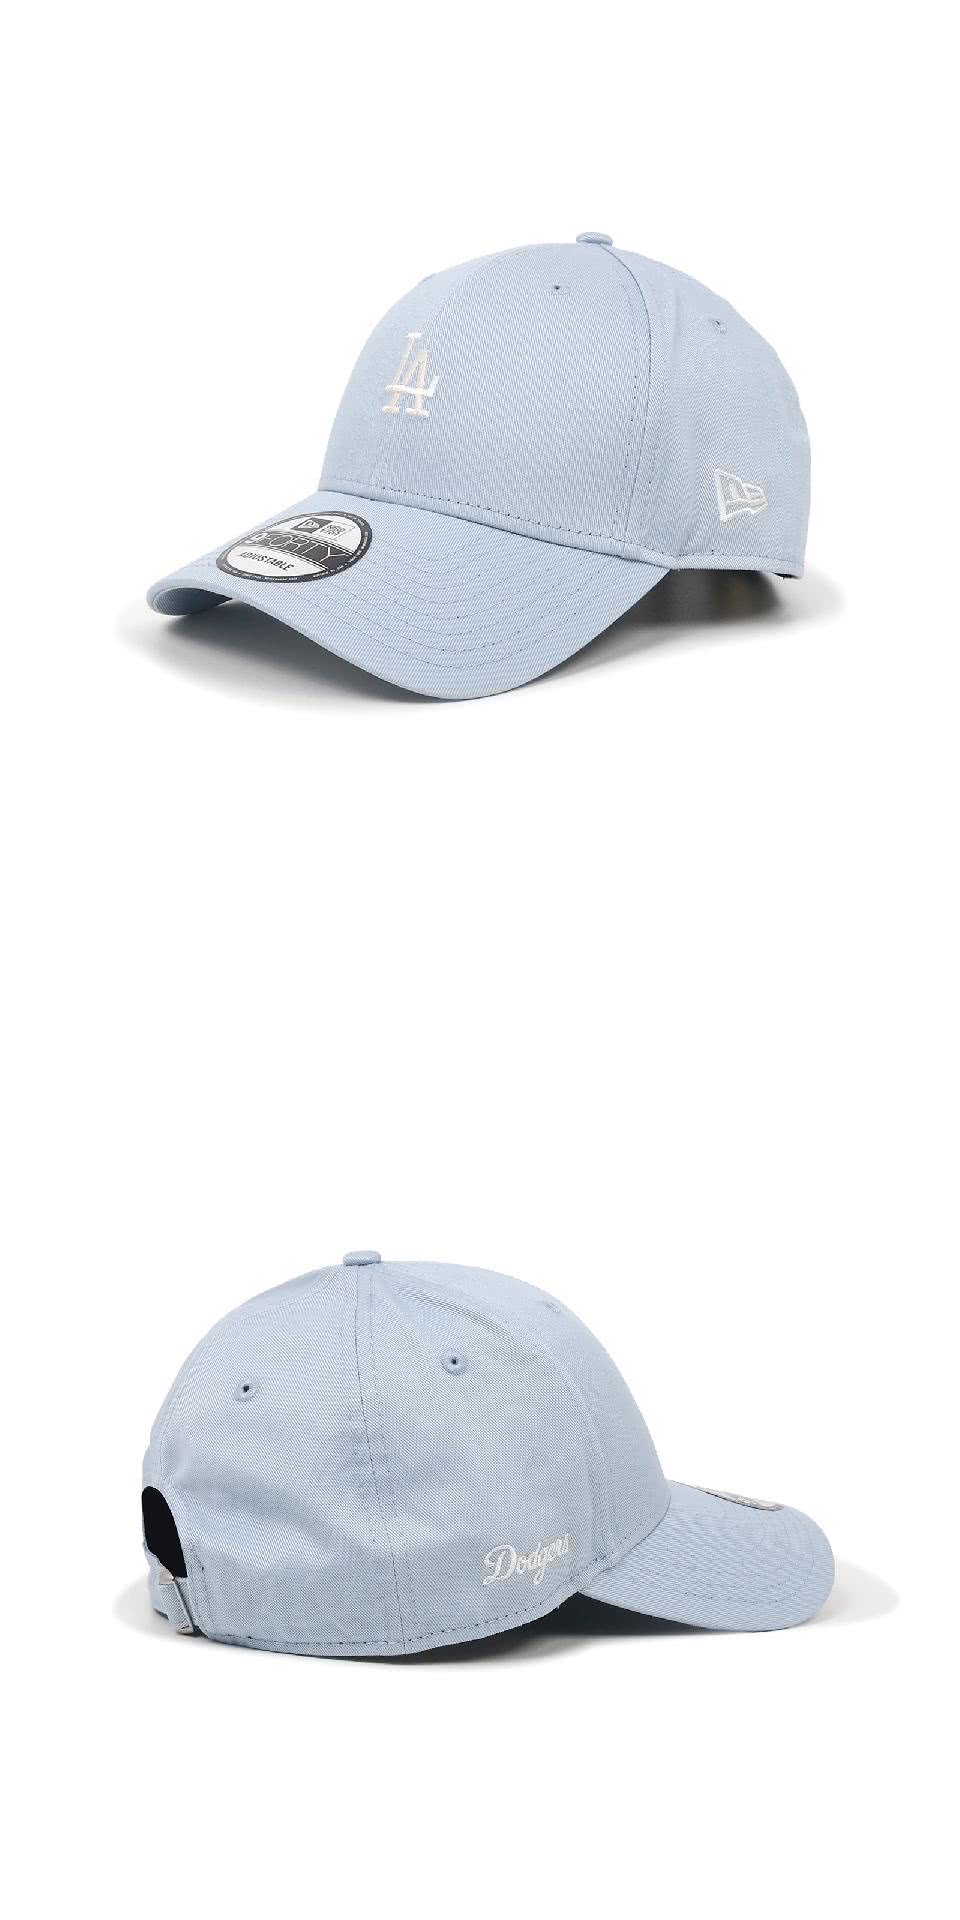 NEW ERA 棒球帽 Color Era 藍 白 940帽